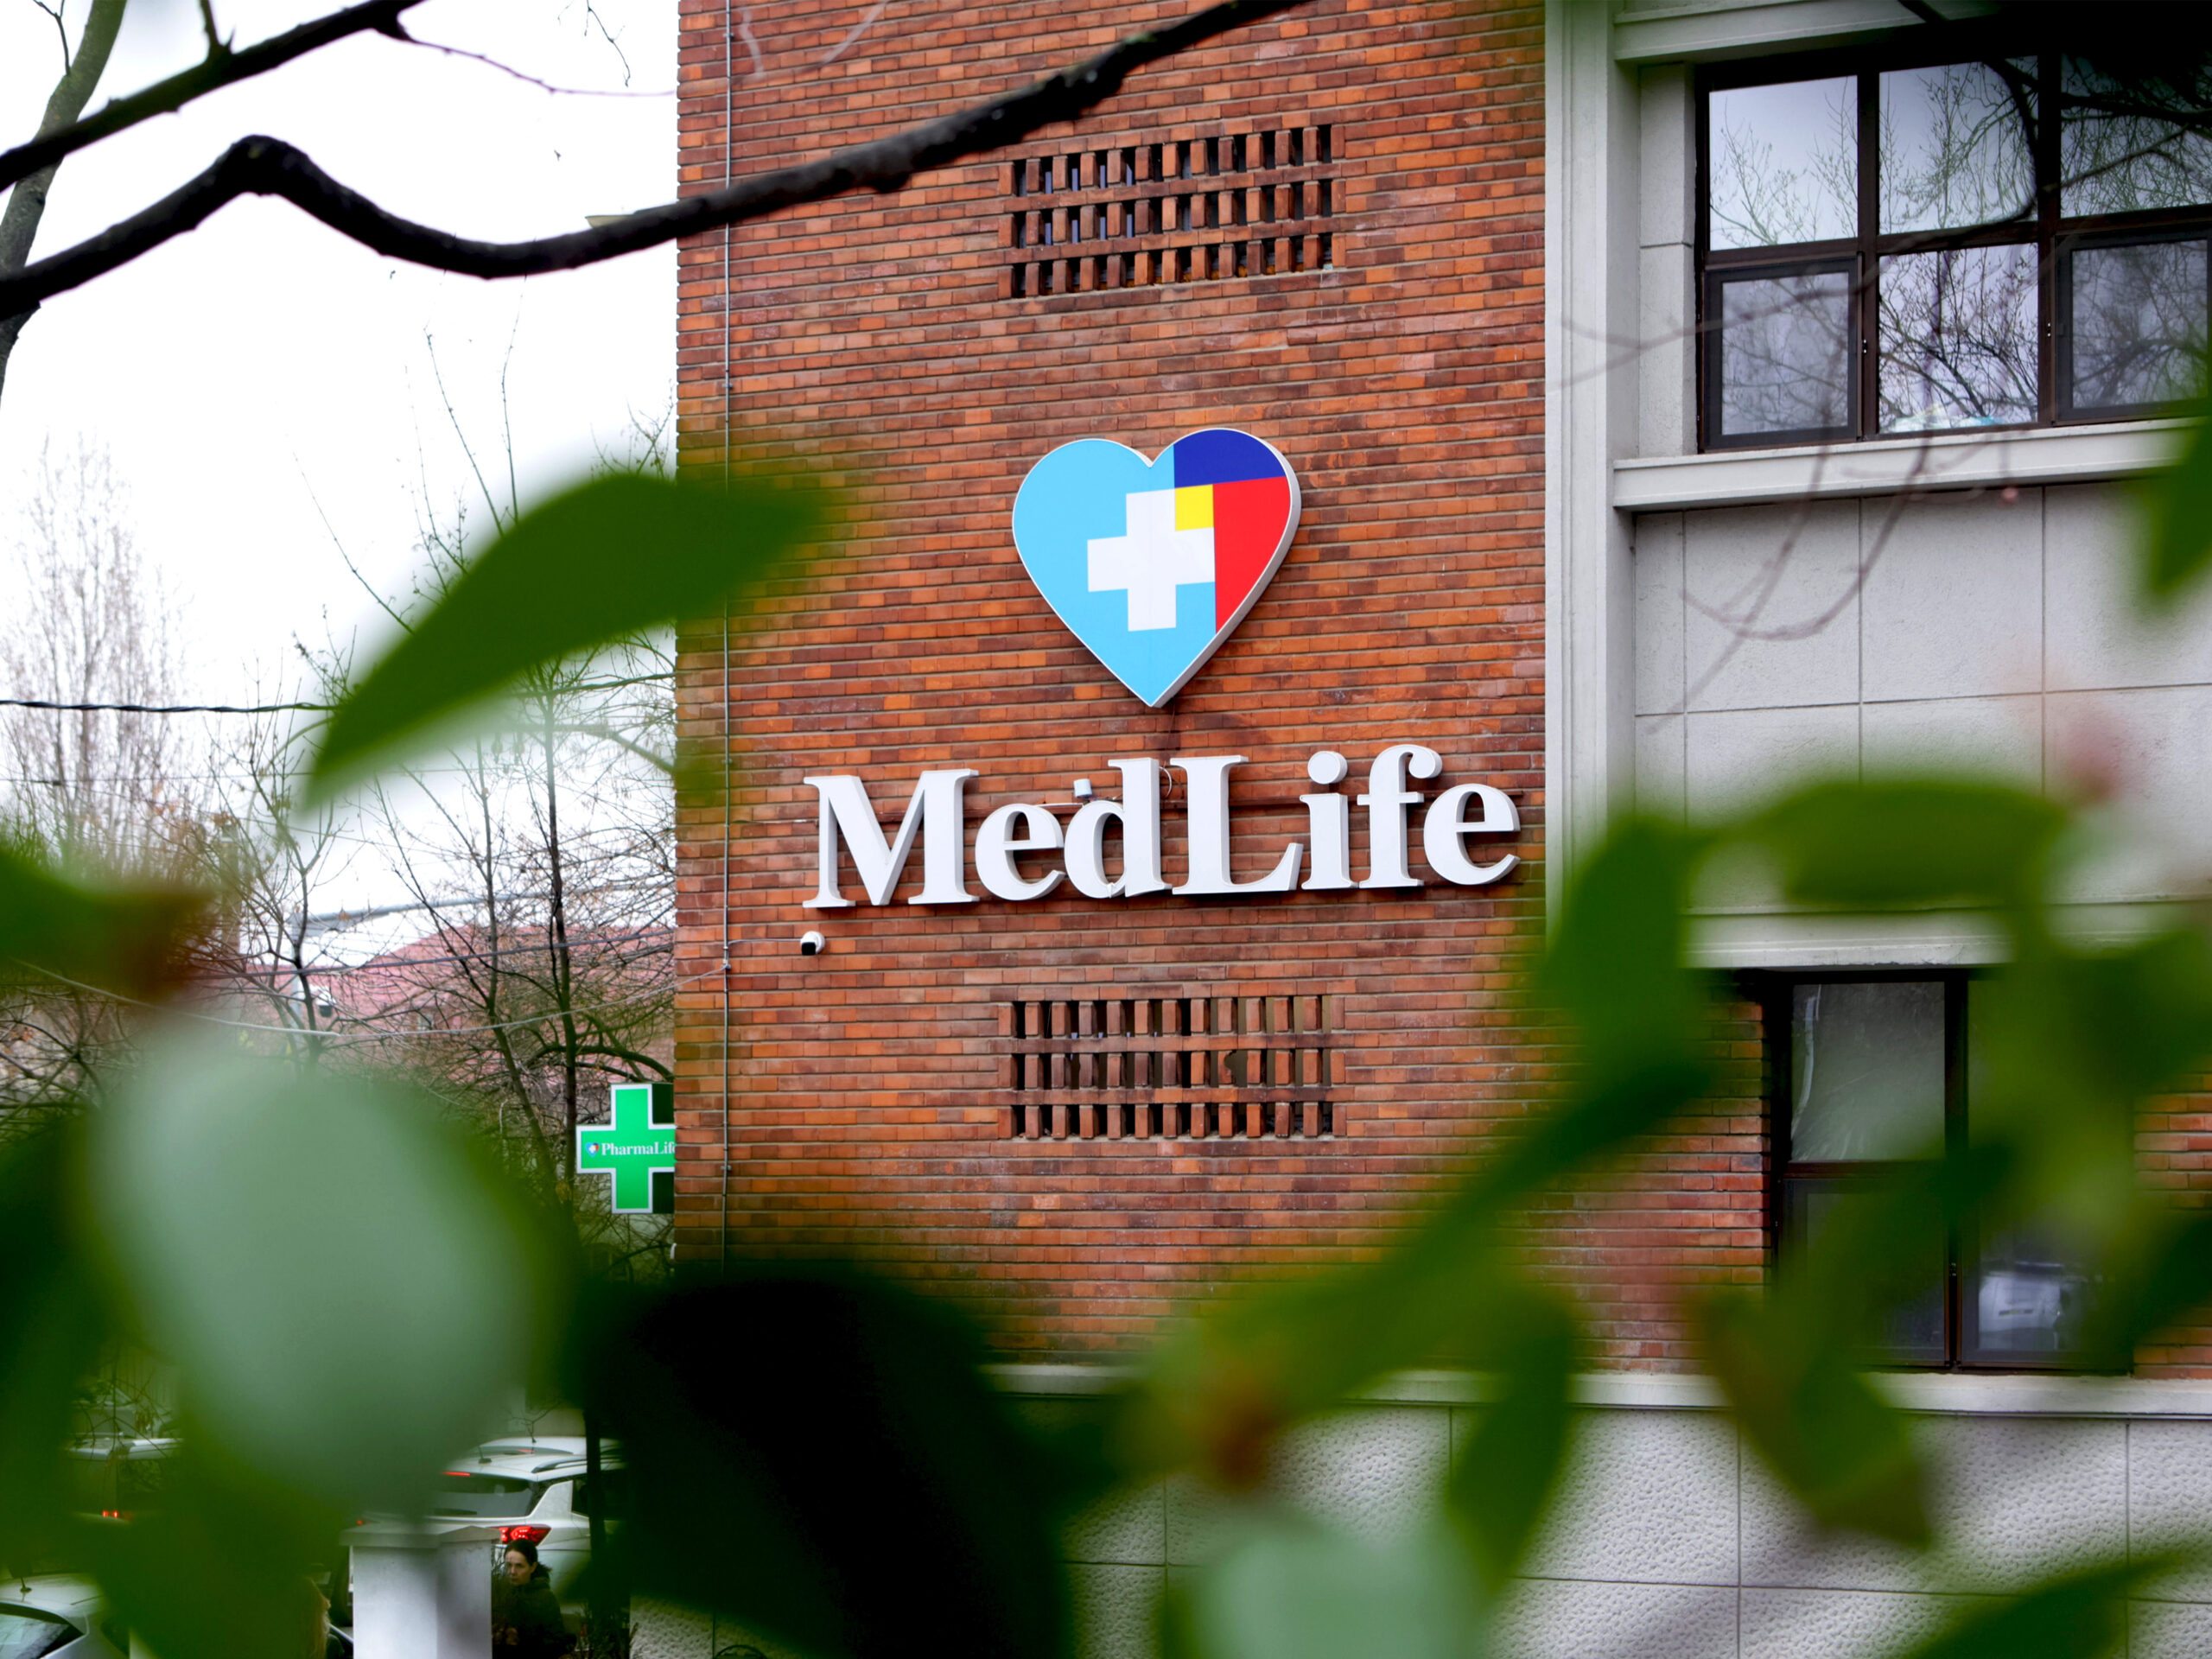 MedLife suplimentează cu 50 de milioane de euro creditul sindicalizat, ajungând la o valoare totală de 268.3 milioane de euro: “Păstrând o abordare prudentă, noile fonduri vor fi utilizate cu precădere pentru noi achiziții”